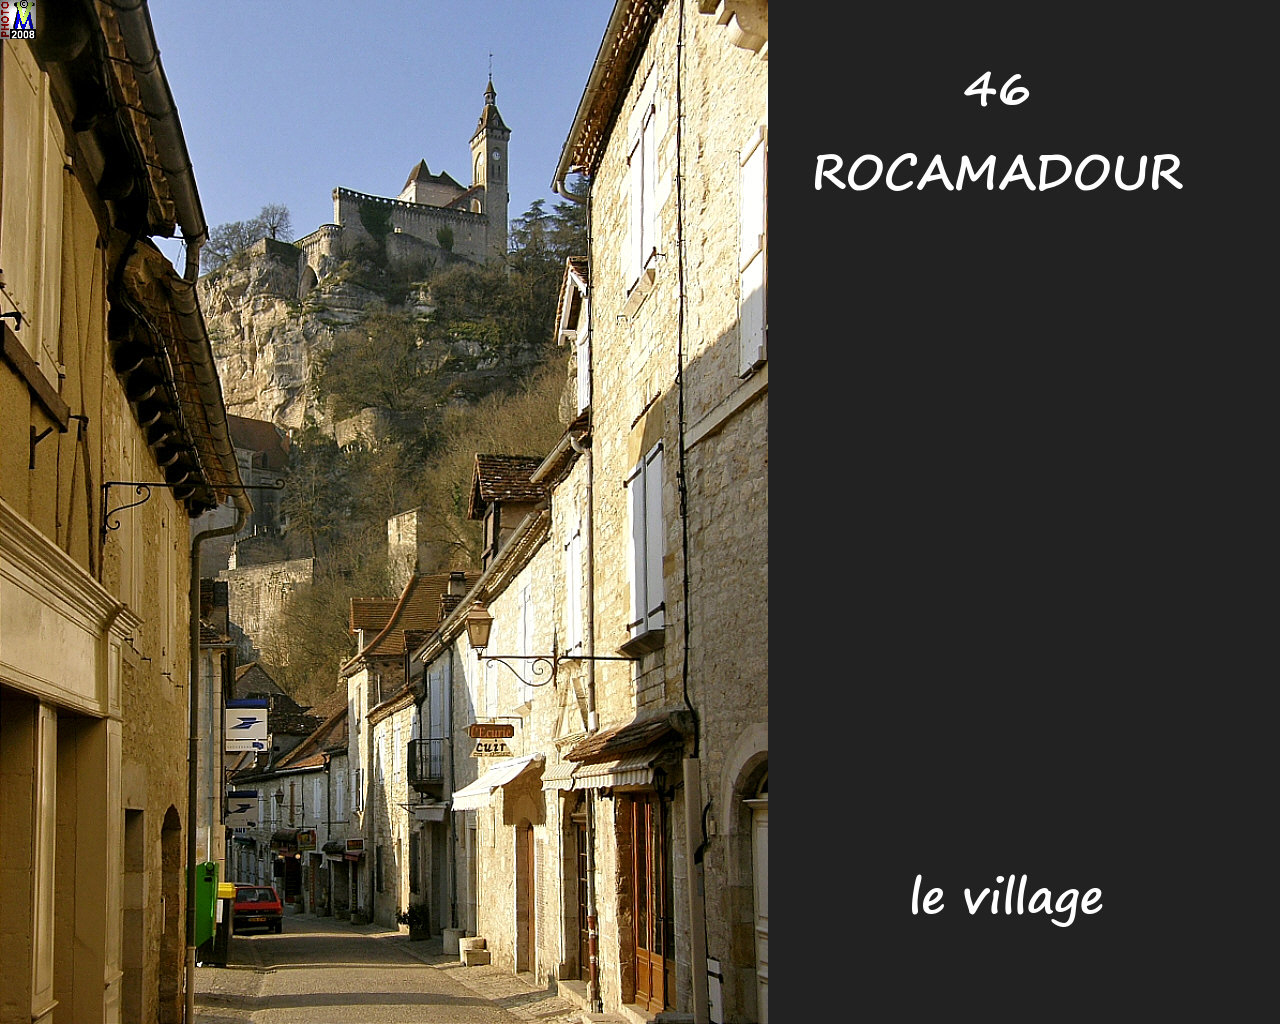 46ROCAMADOUR_village_104.jpg